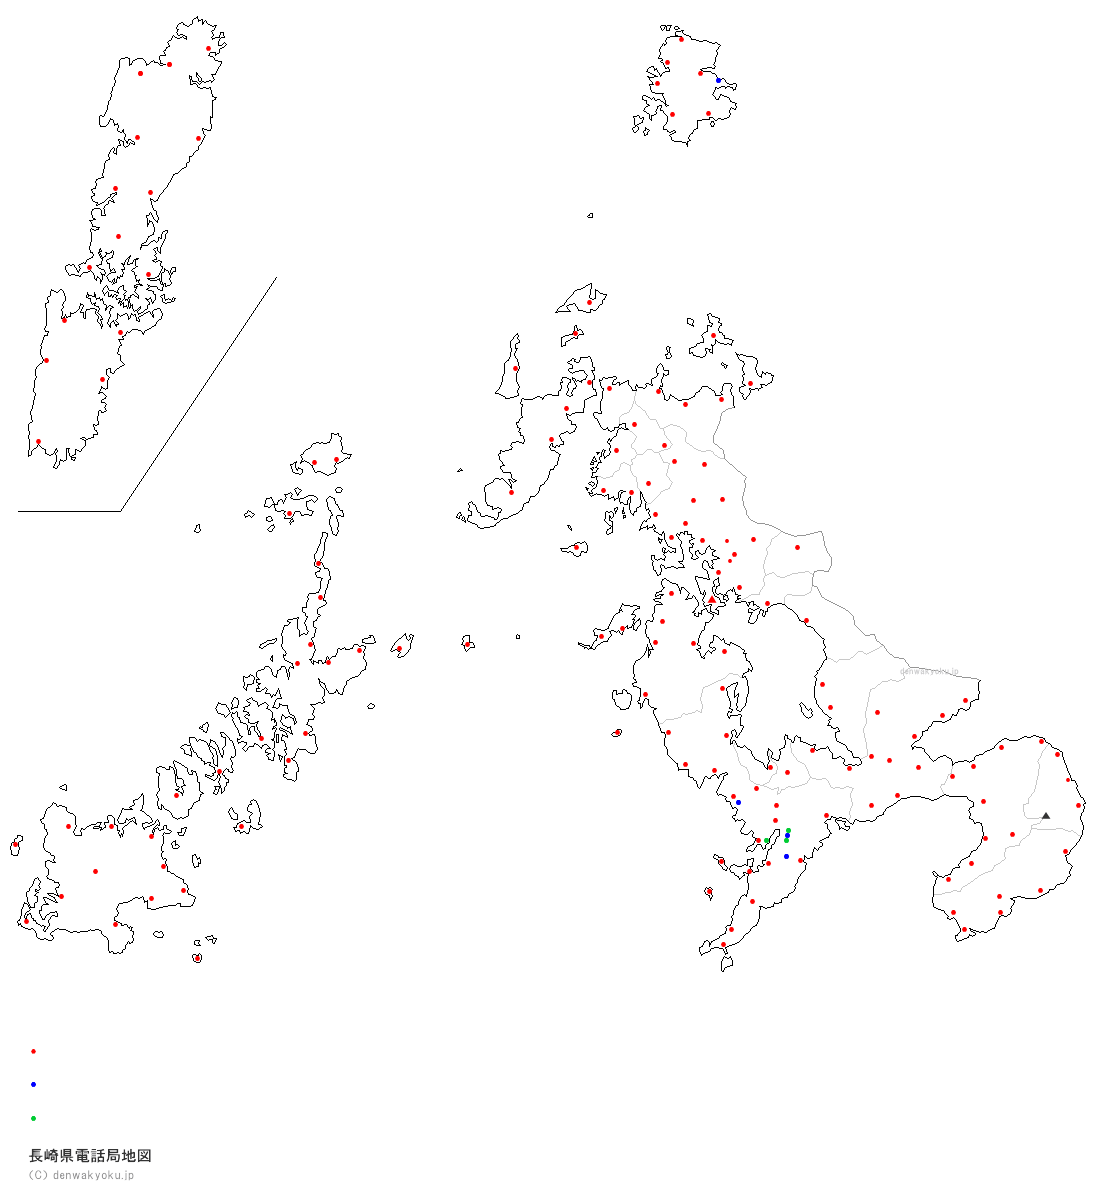 長崎県電話局地図